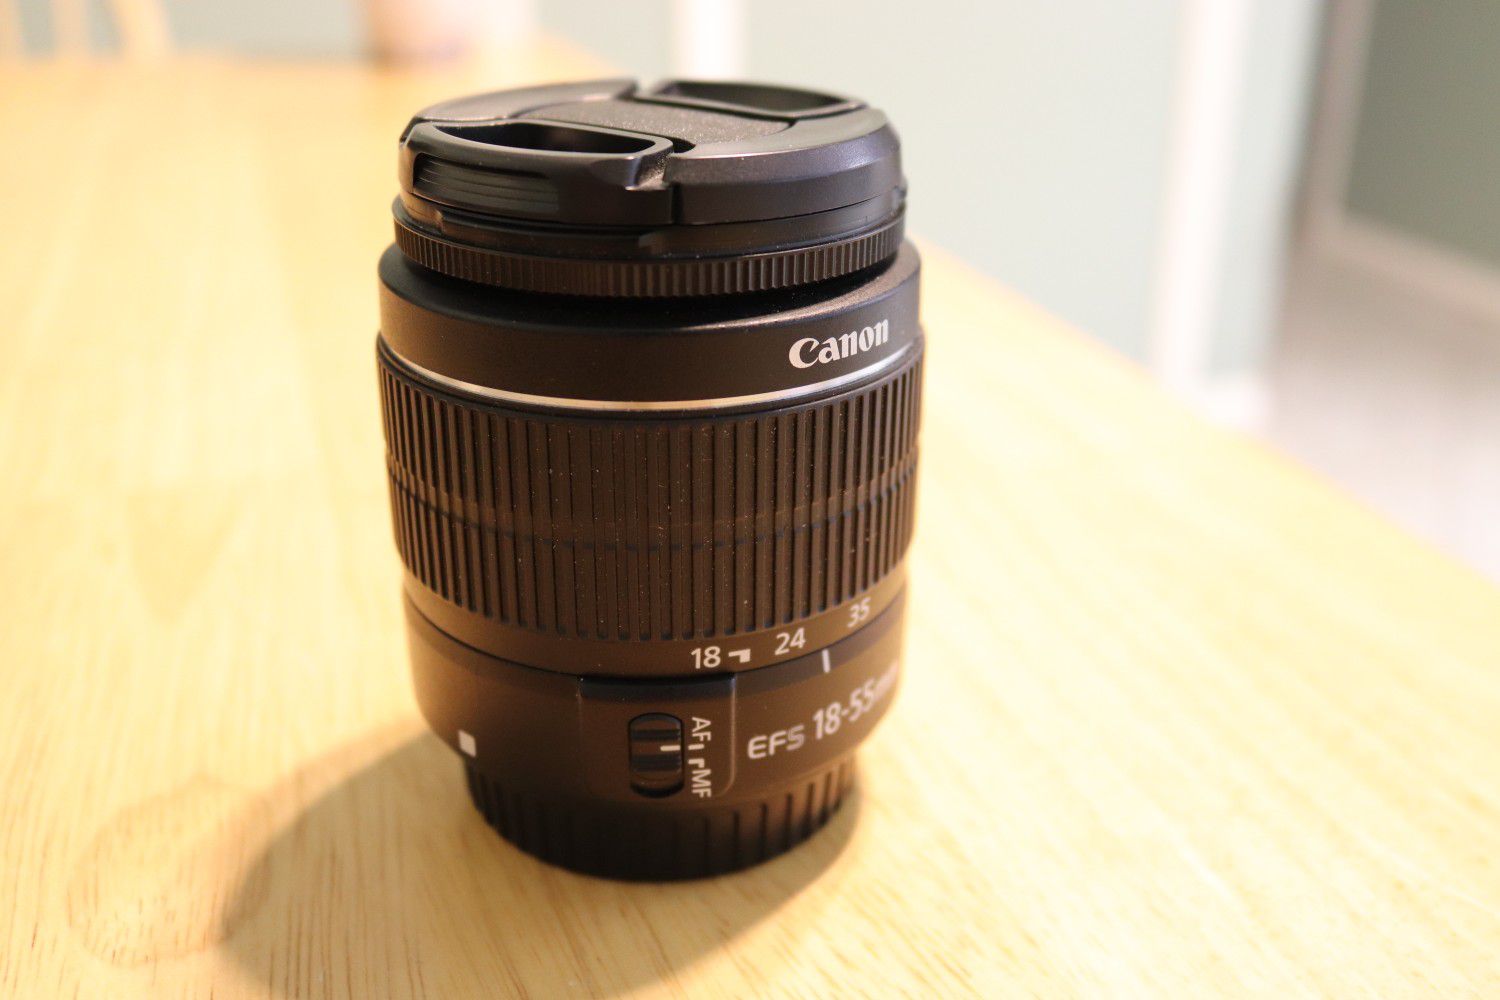 Canon 18-55mm EFS kit camera lense